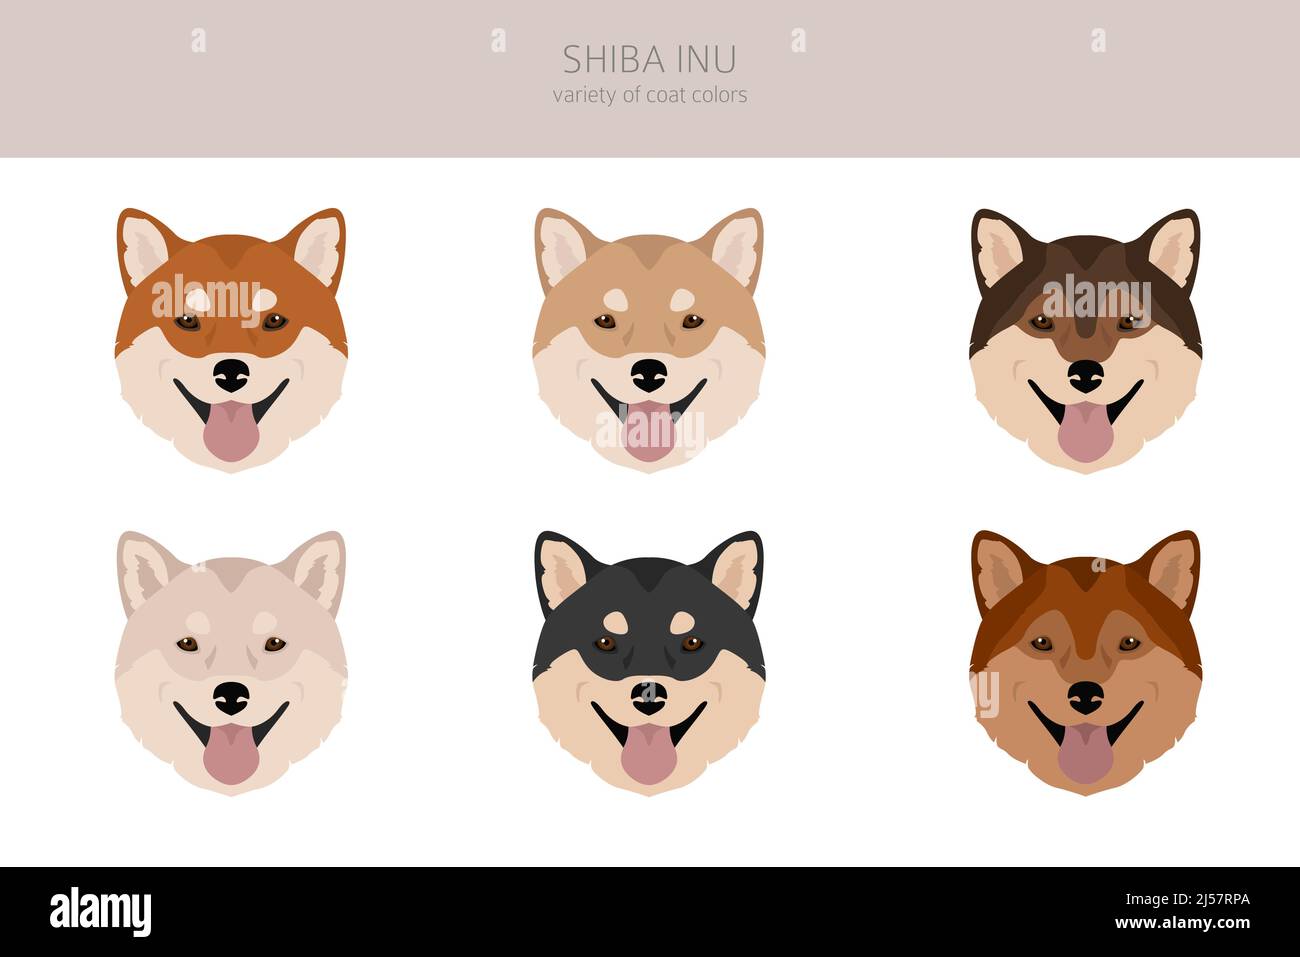 Shiba Inu, japanische kleine Größe Hund Mantel Farben, verschiedene Posen  Cliparts. Vektorgrafik Stock-Vektorgrafik - Alamy